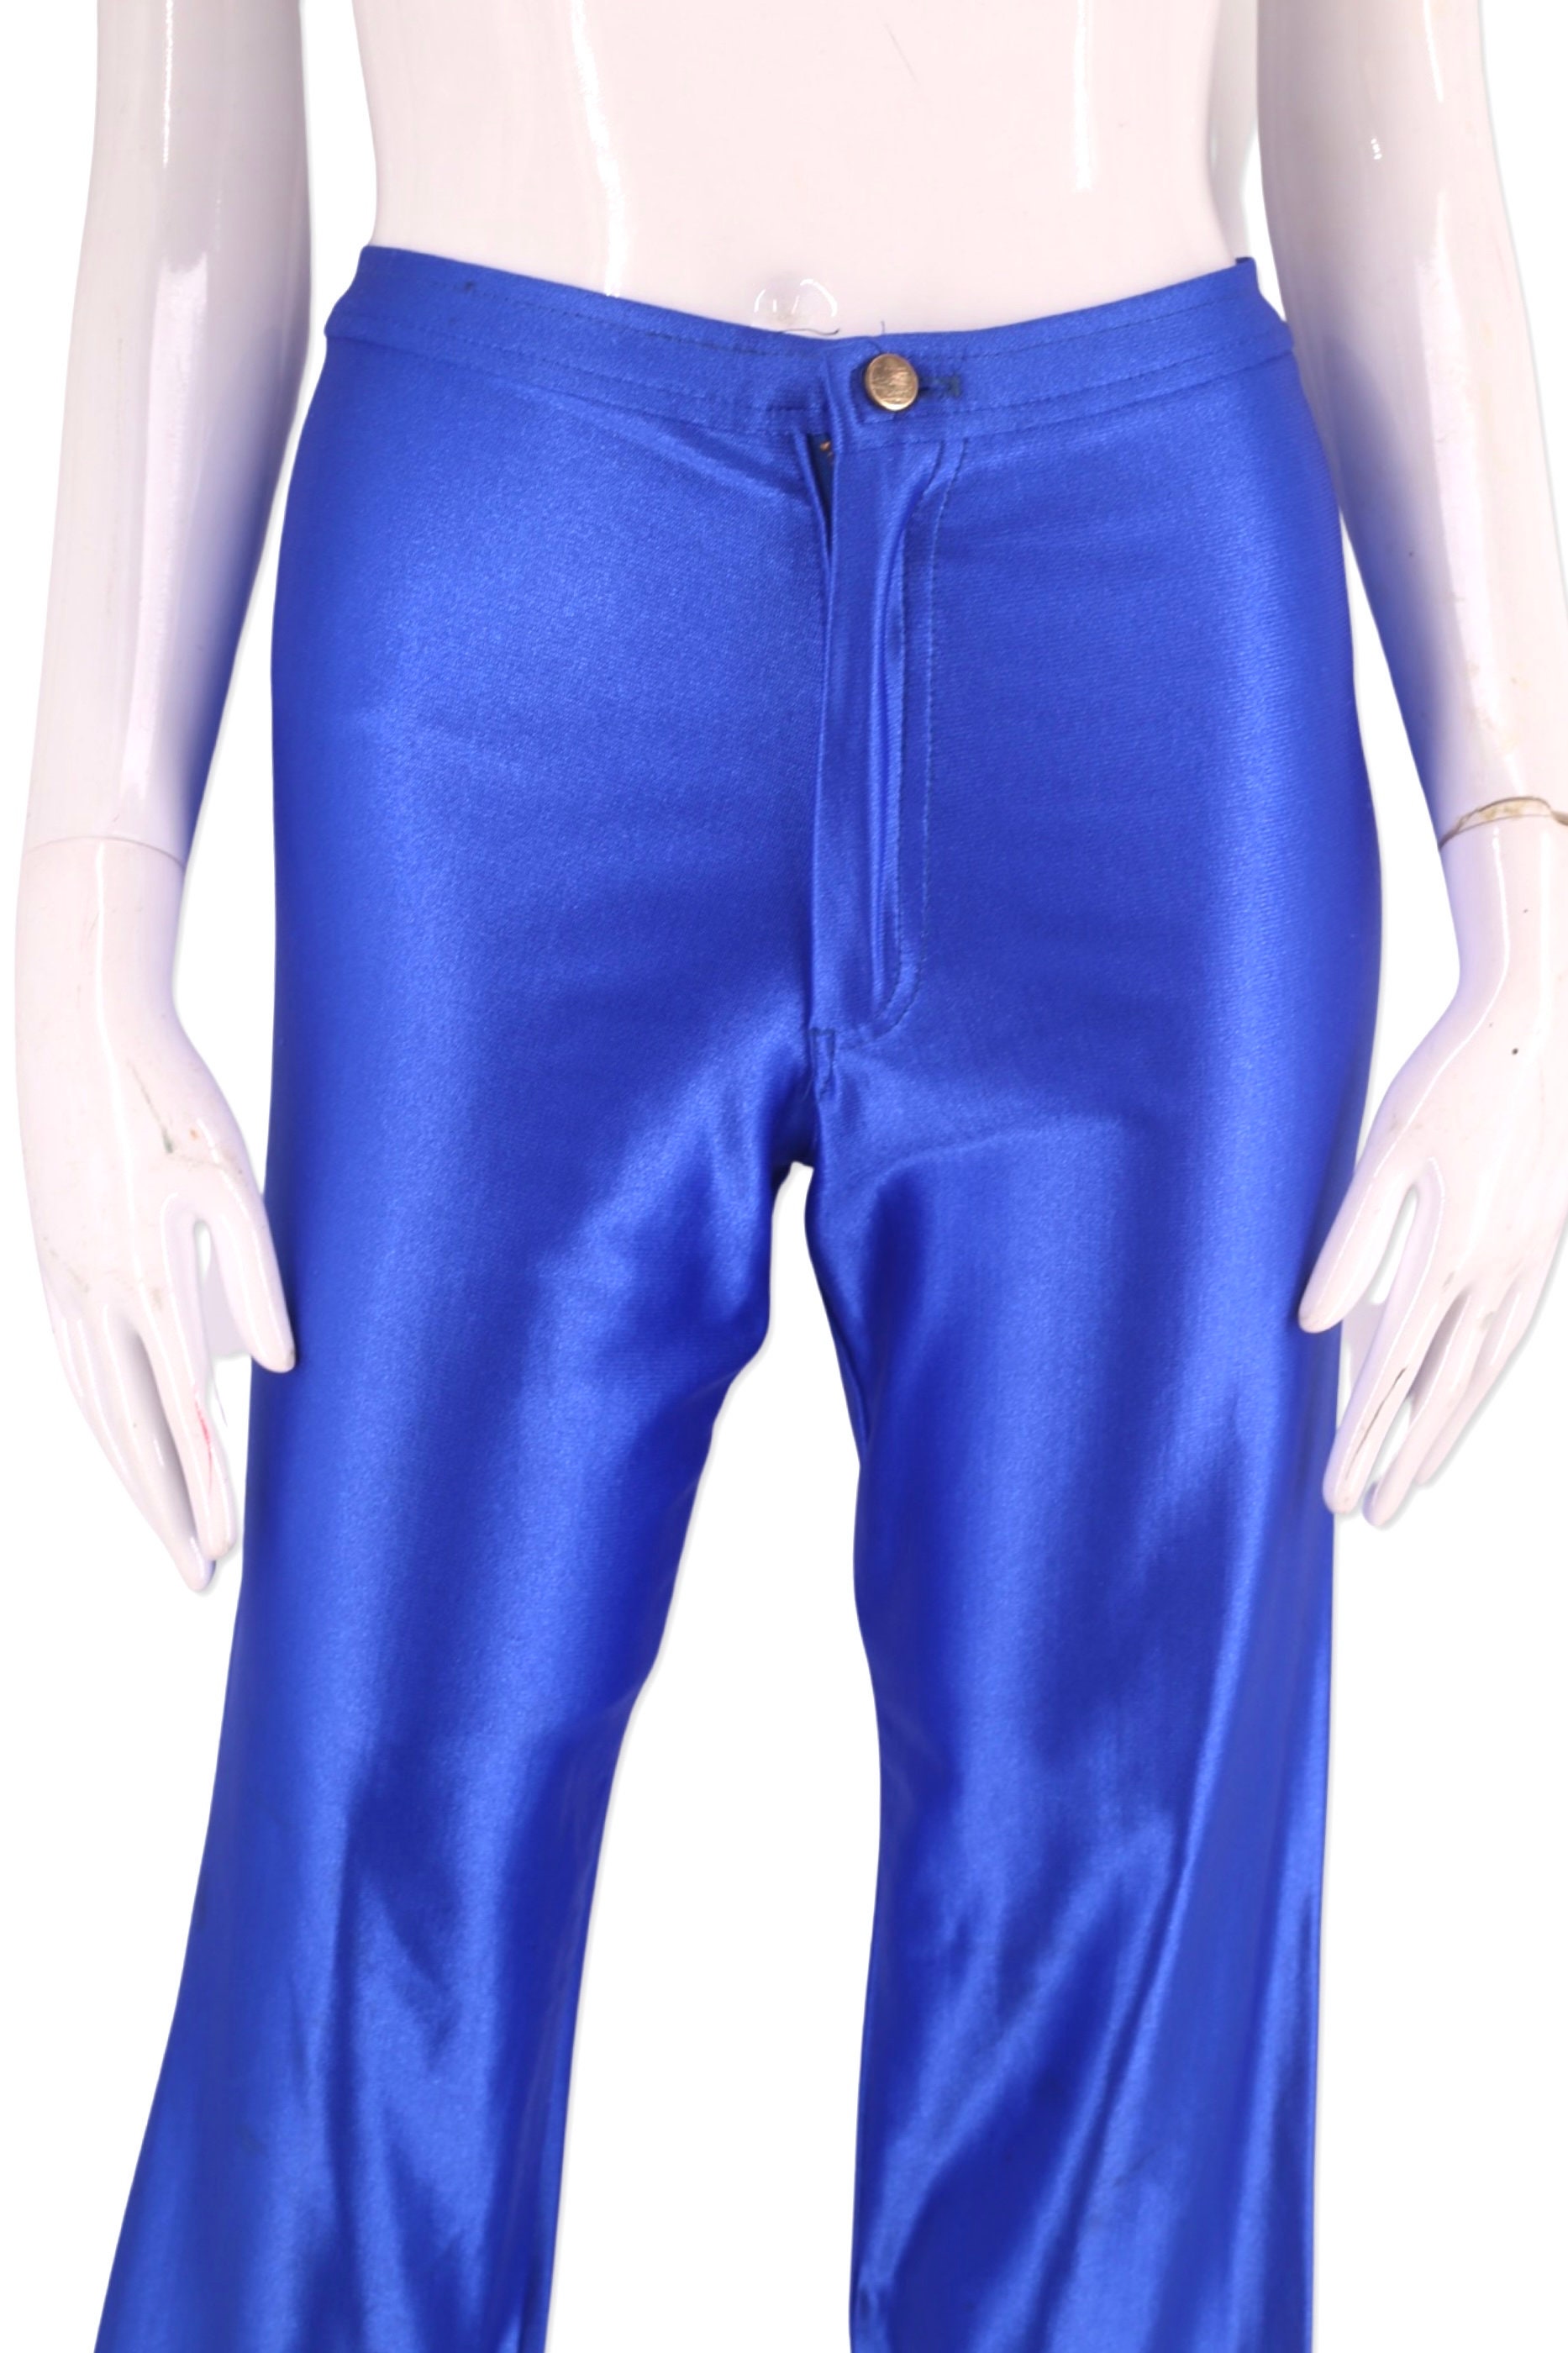 ULTIMATE DISCO DIVA vintage 80s ELECTRIC BLUE Skinny SPANDEX Pants Leggings  skin tight glam L.